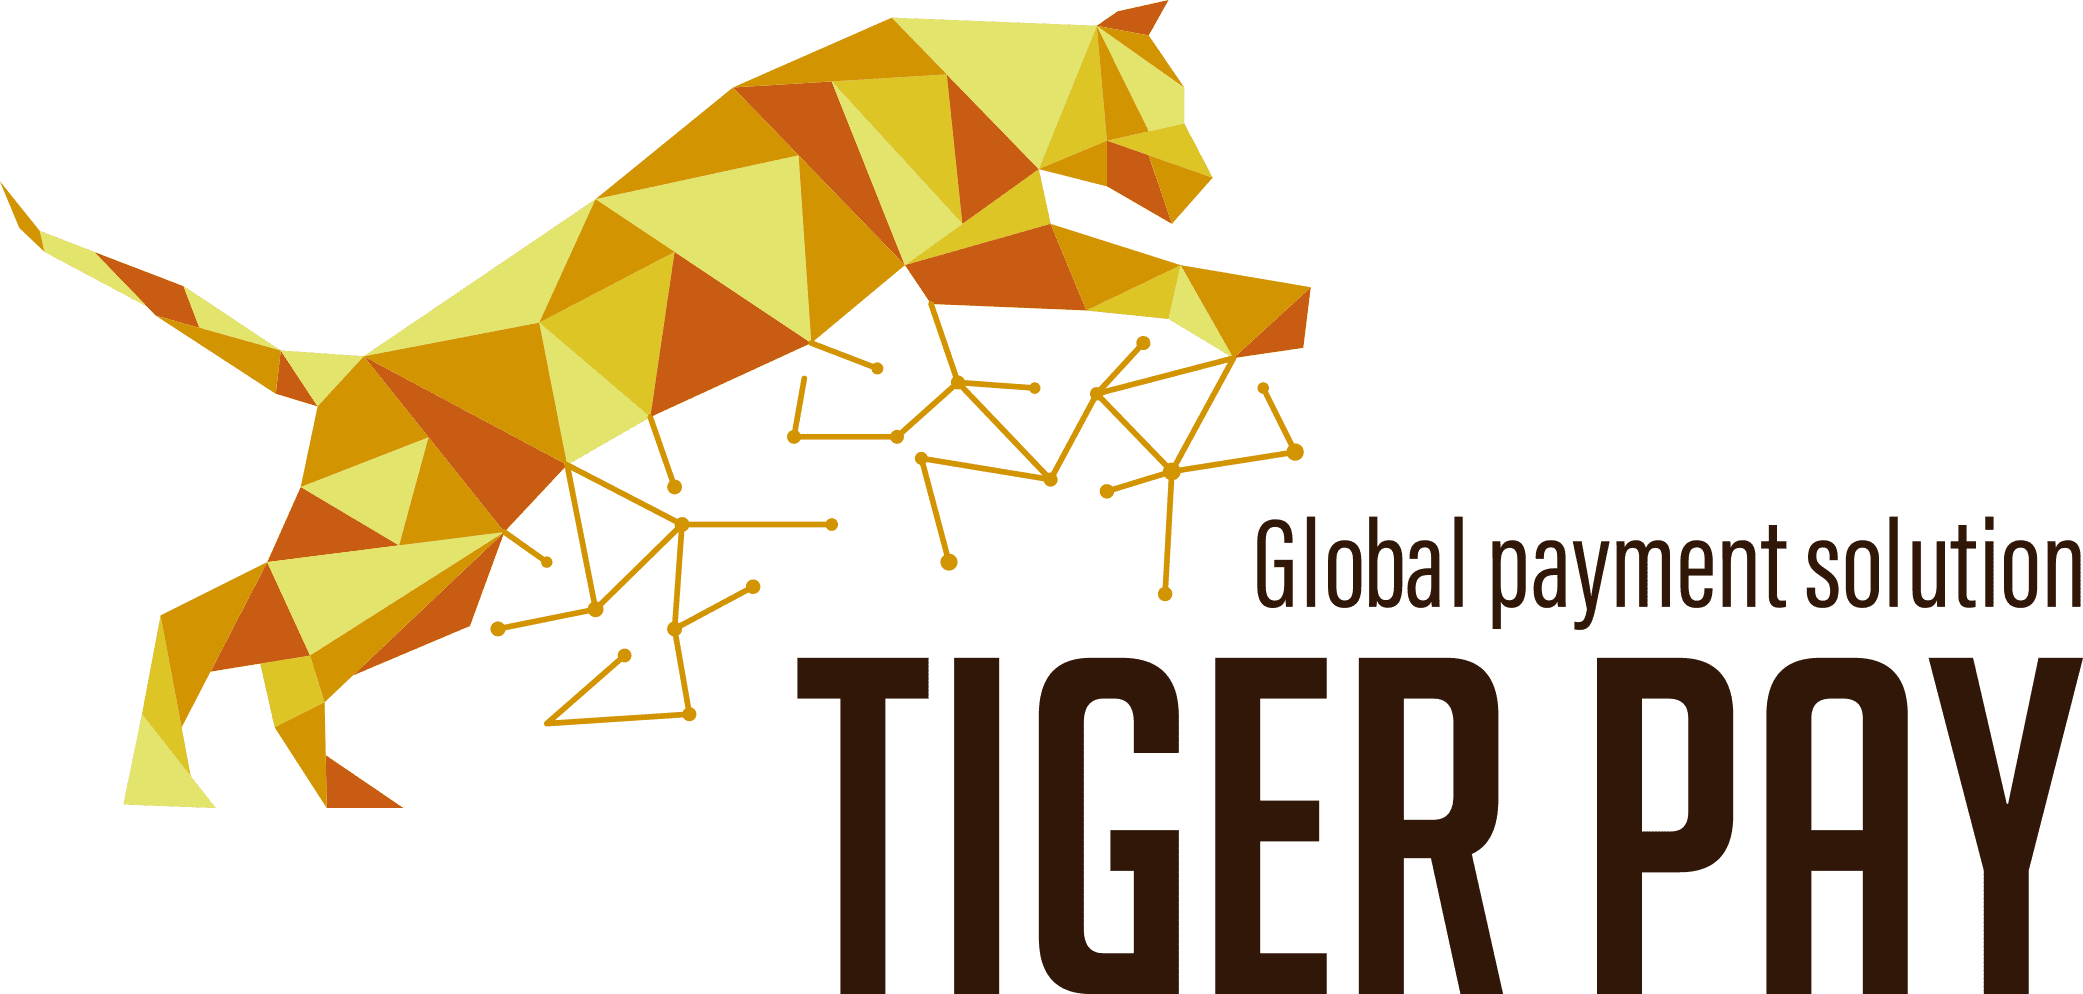 TigerPay logo